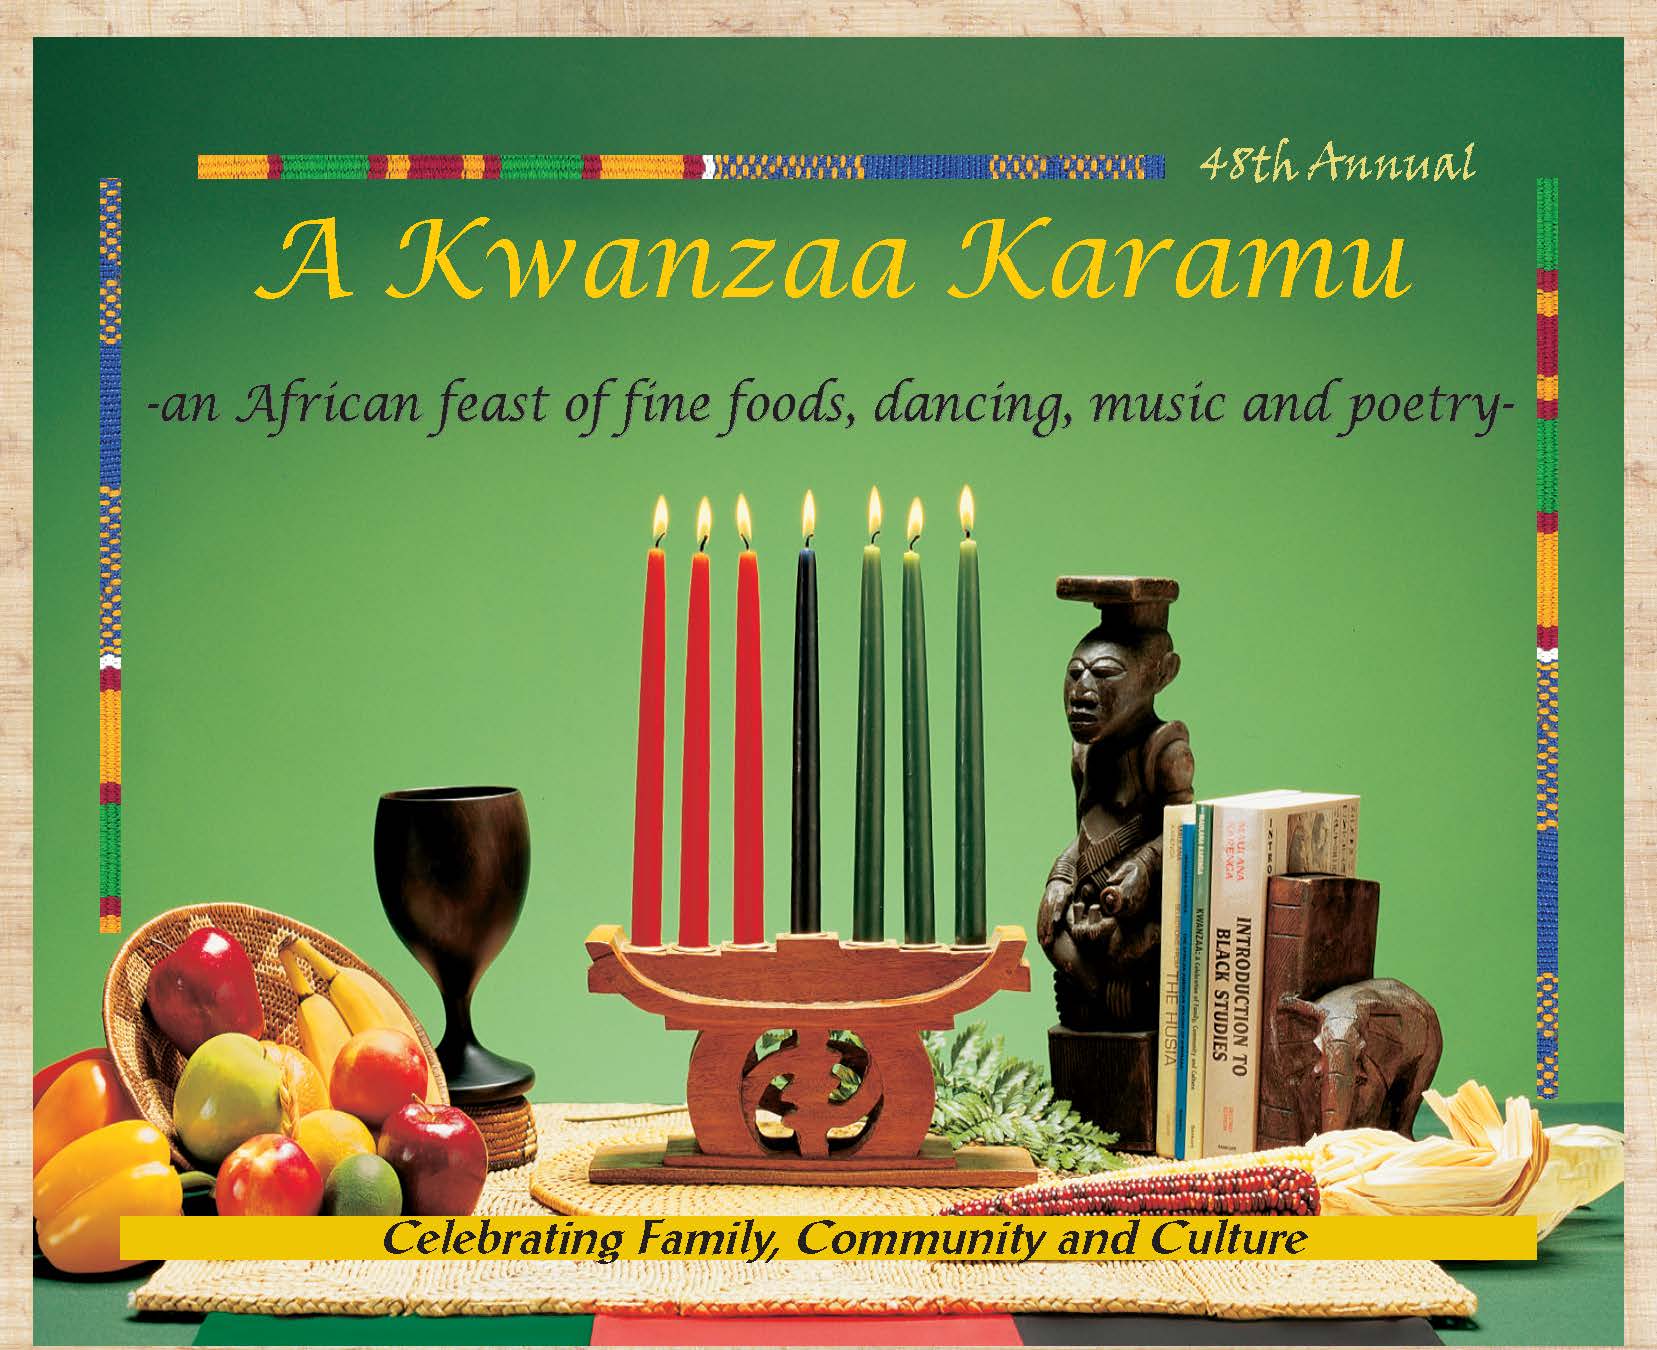 Kwanzaa Karamu 2014 Announcement_Page_1